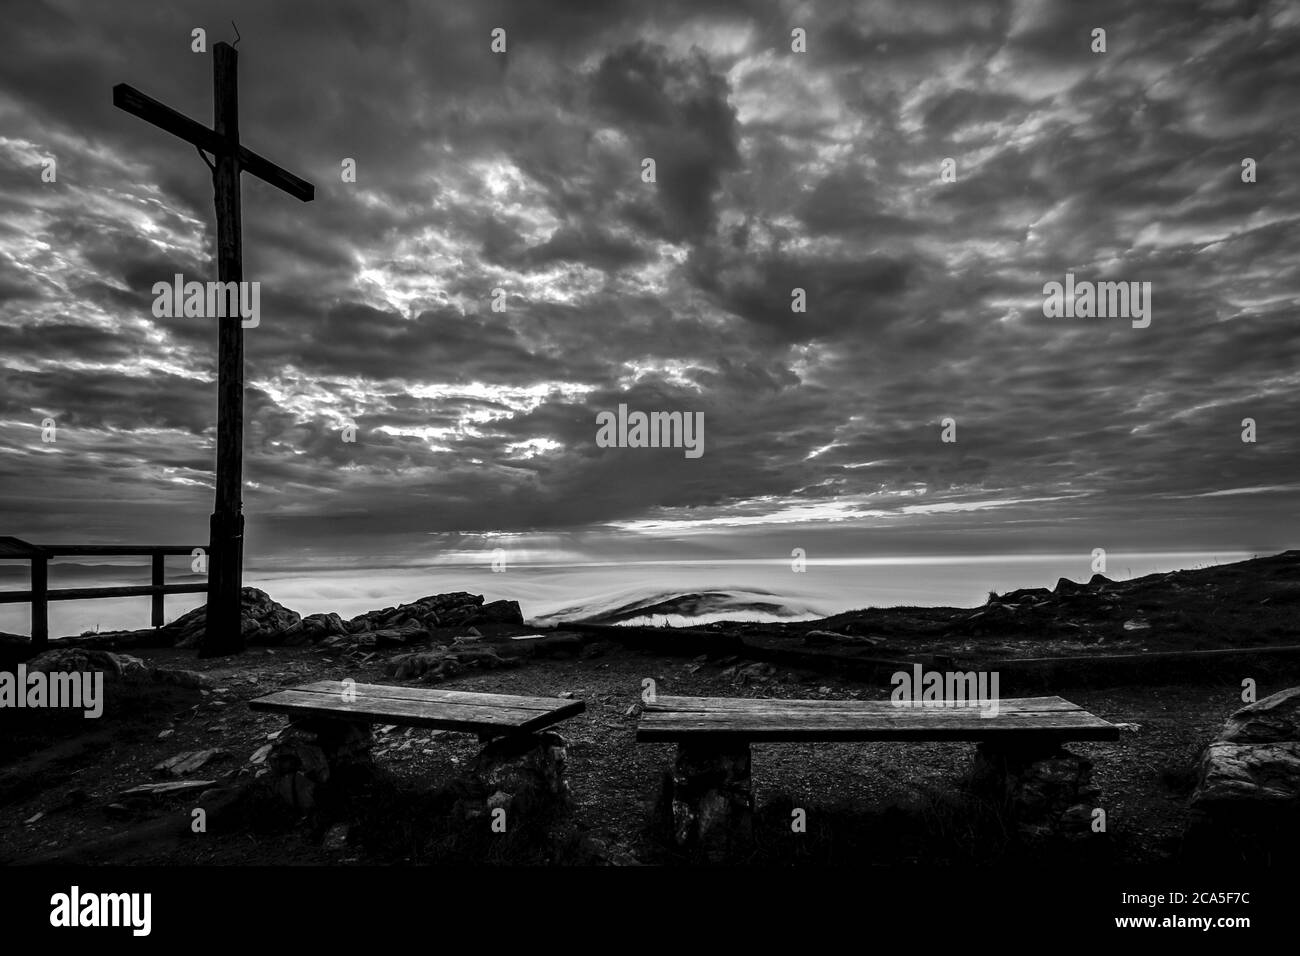 Sonnenaufgang und Inversion am Jested Berg in der Nähe der Stadt Liberec, Tschechien, Schnee und Winter und Blick auf die Seilbahn, Fotografen am Kreuz. Stockfoto